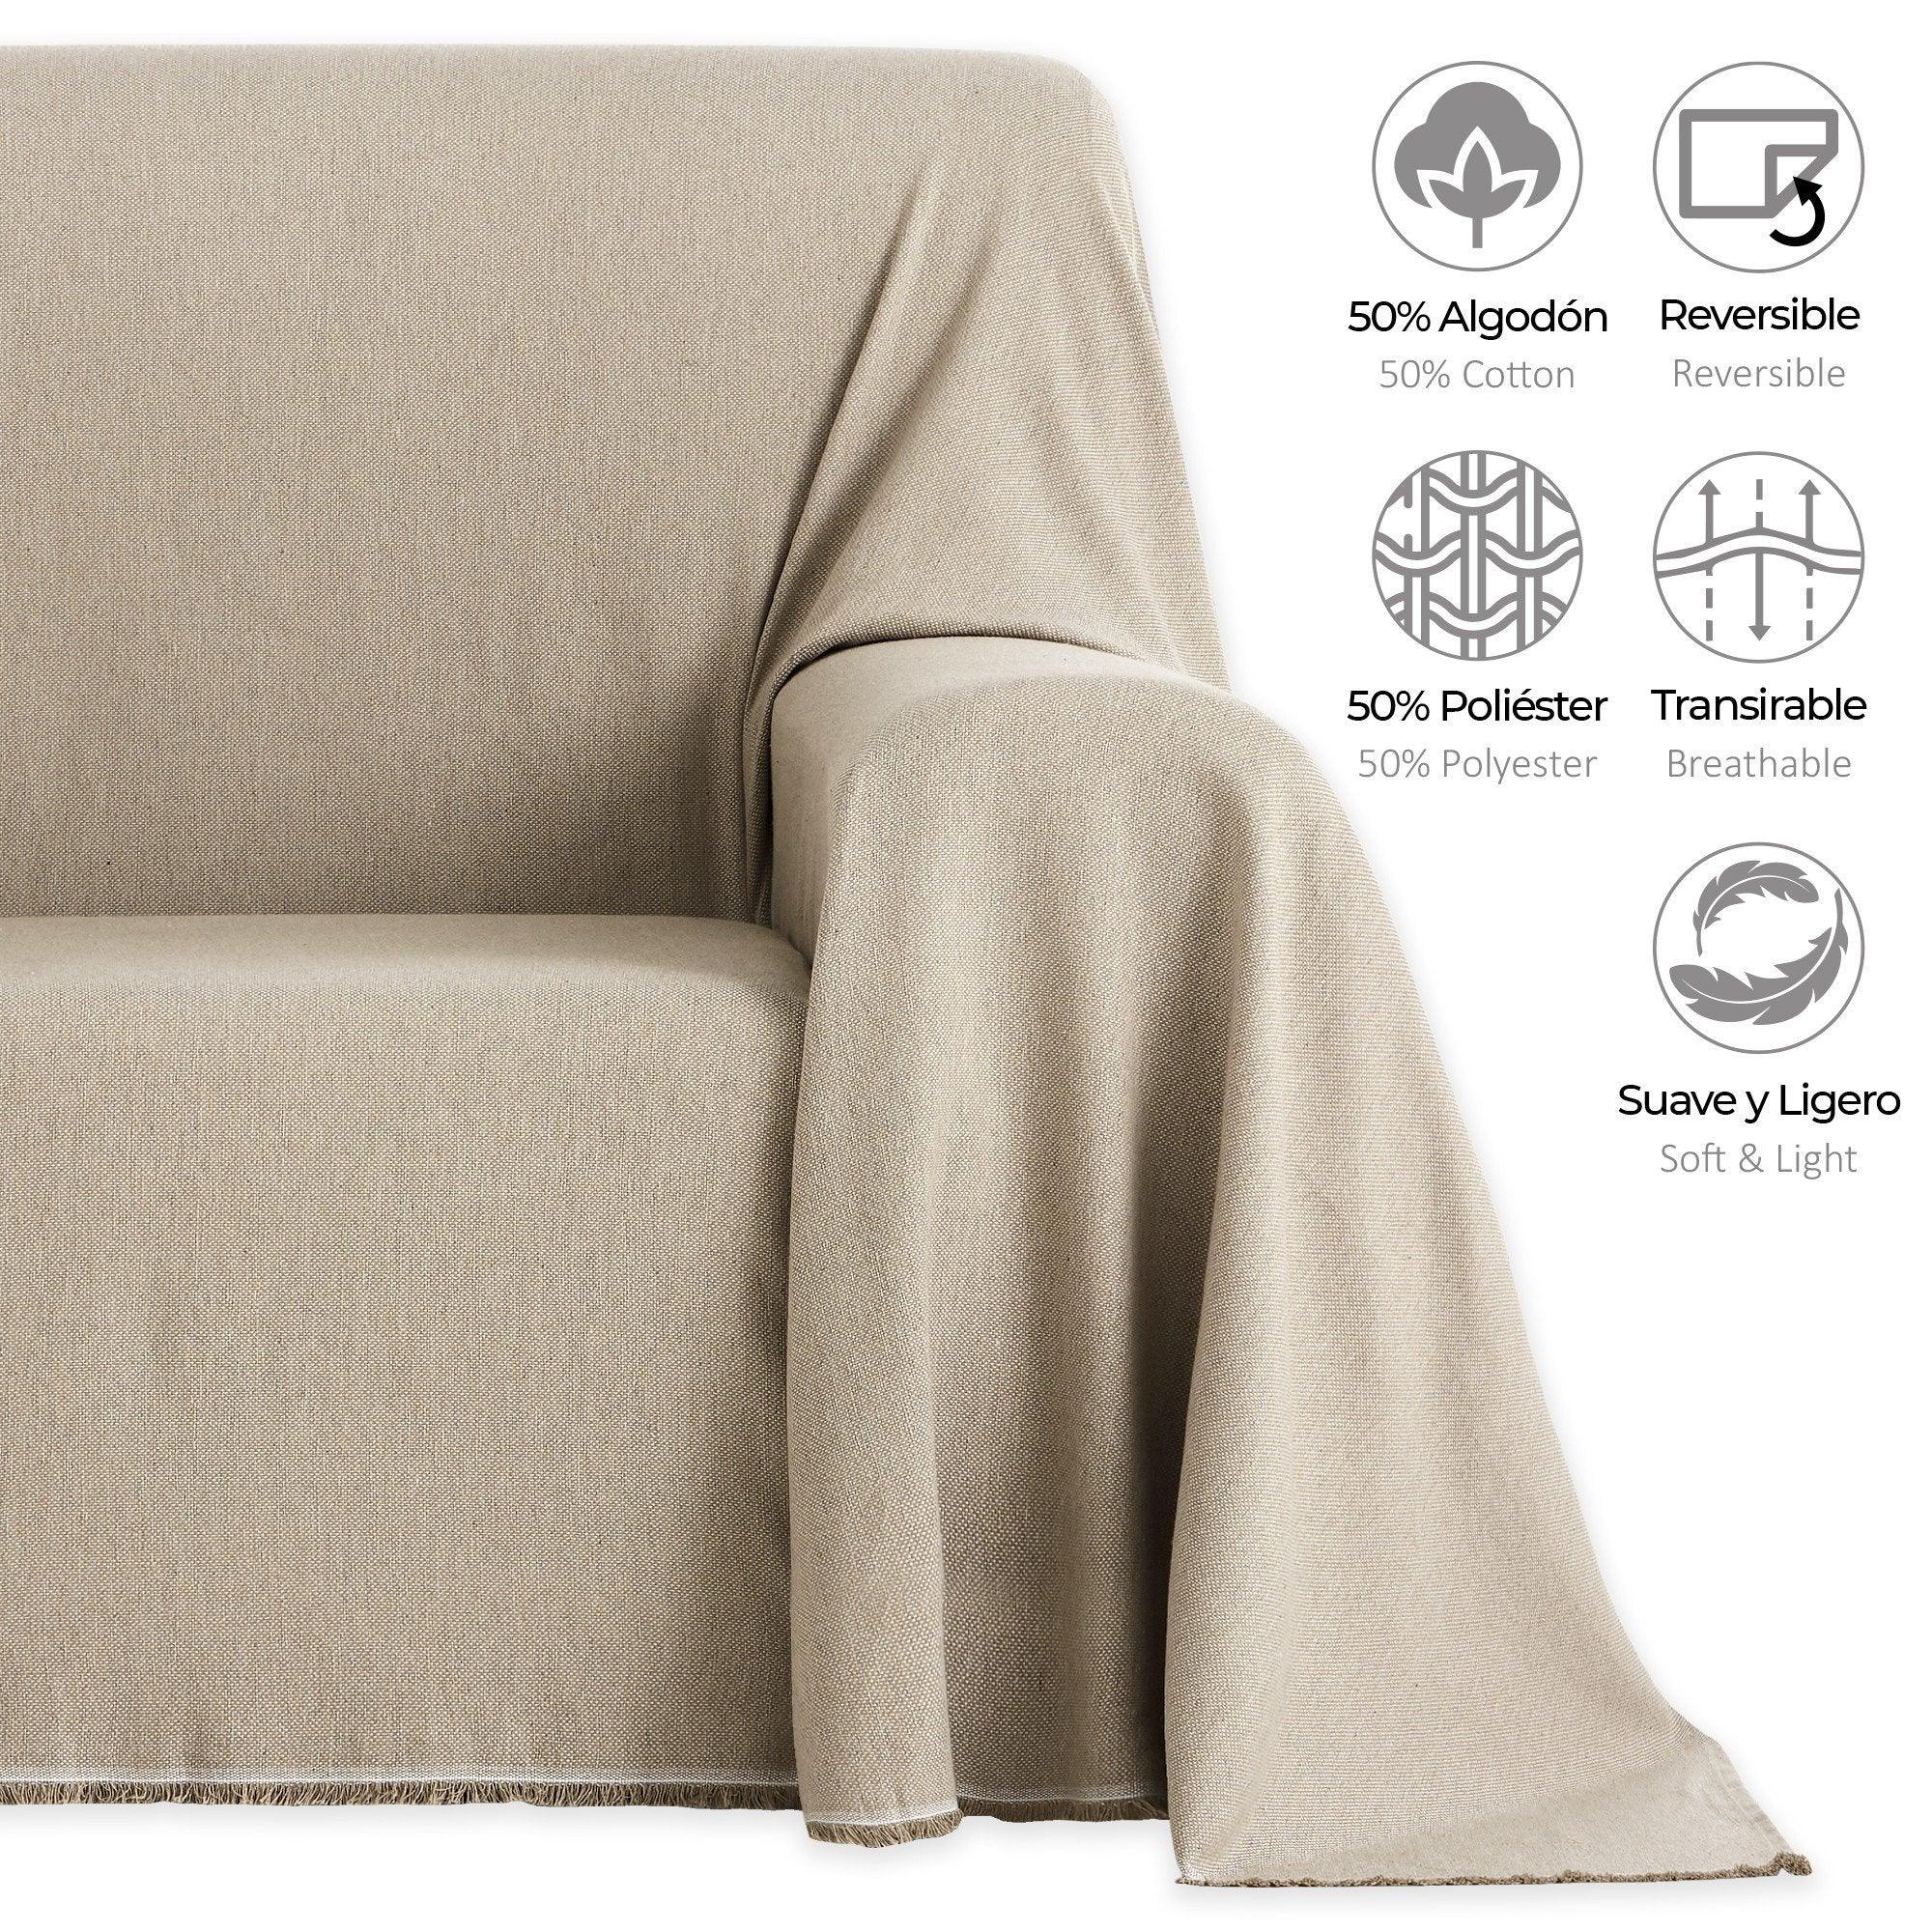 Manta retráctil gigante para sofá, colcha grande de algodón crudo, color  neutro, diseño liso